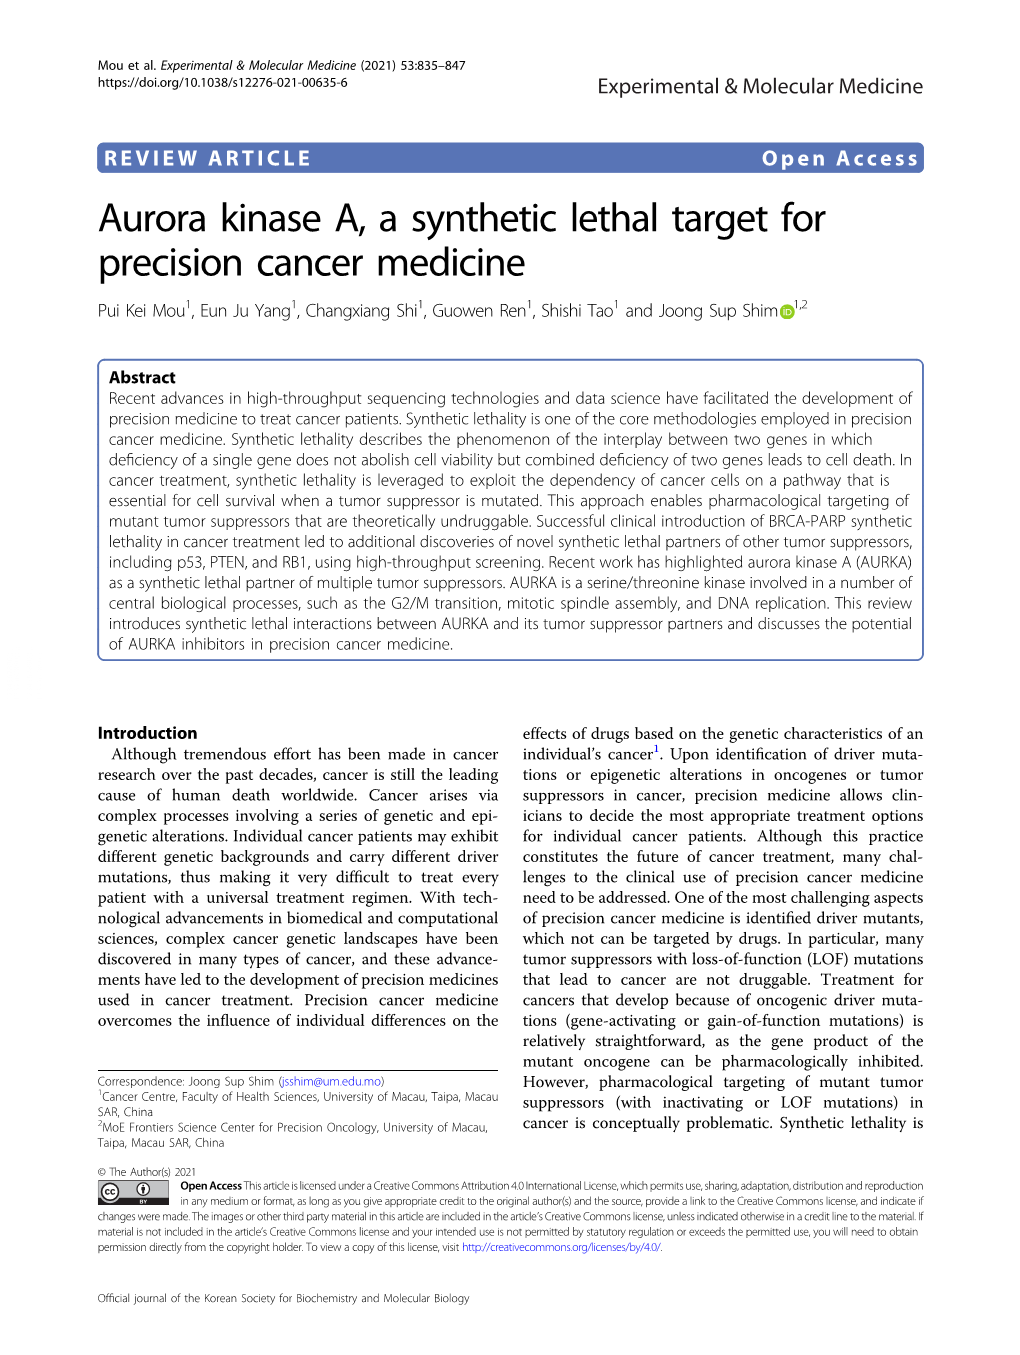 Aurora Kinase A, a Synthetic Lethal Target for Precision Cancer Medicine Pui Kei Mou1,Eunjuyang1, Changxiang Shi1,Guowenren1,Shishitao1 and Joong Sup Shim 1,2